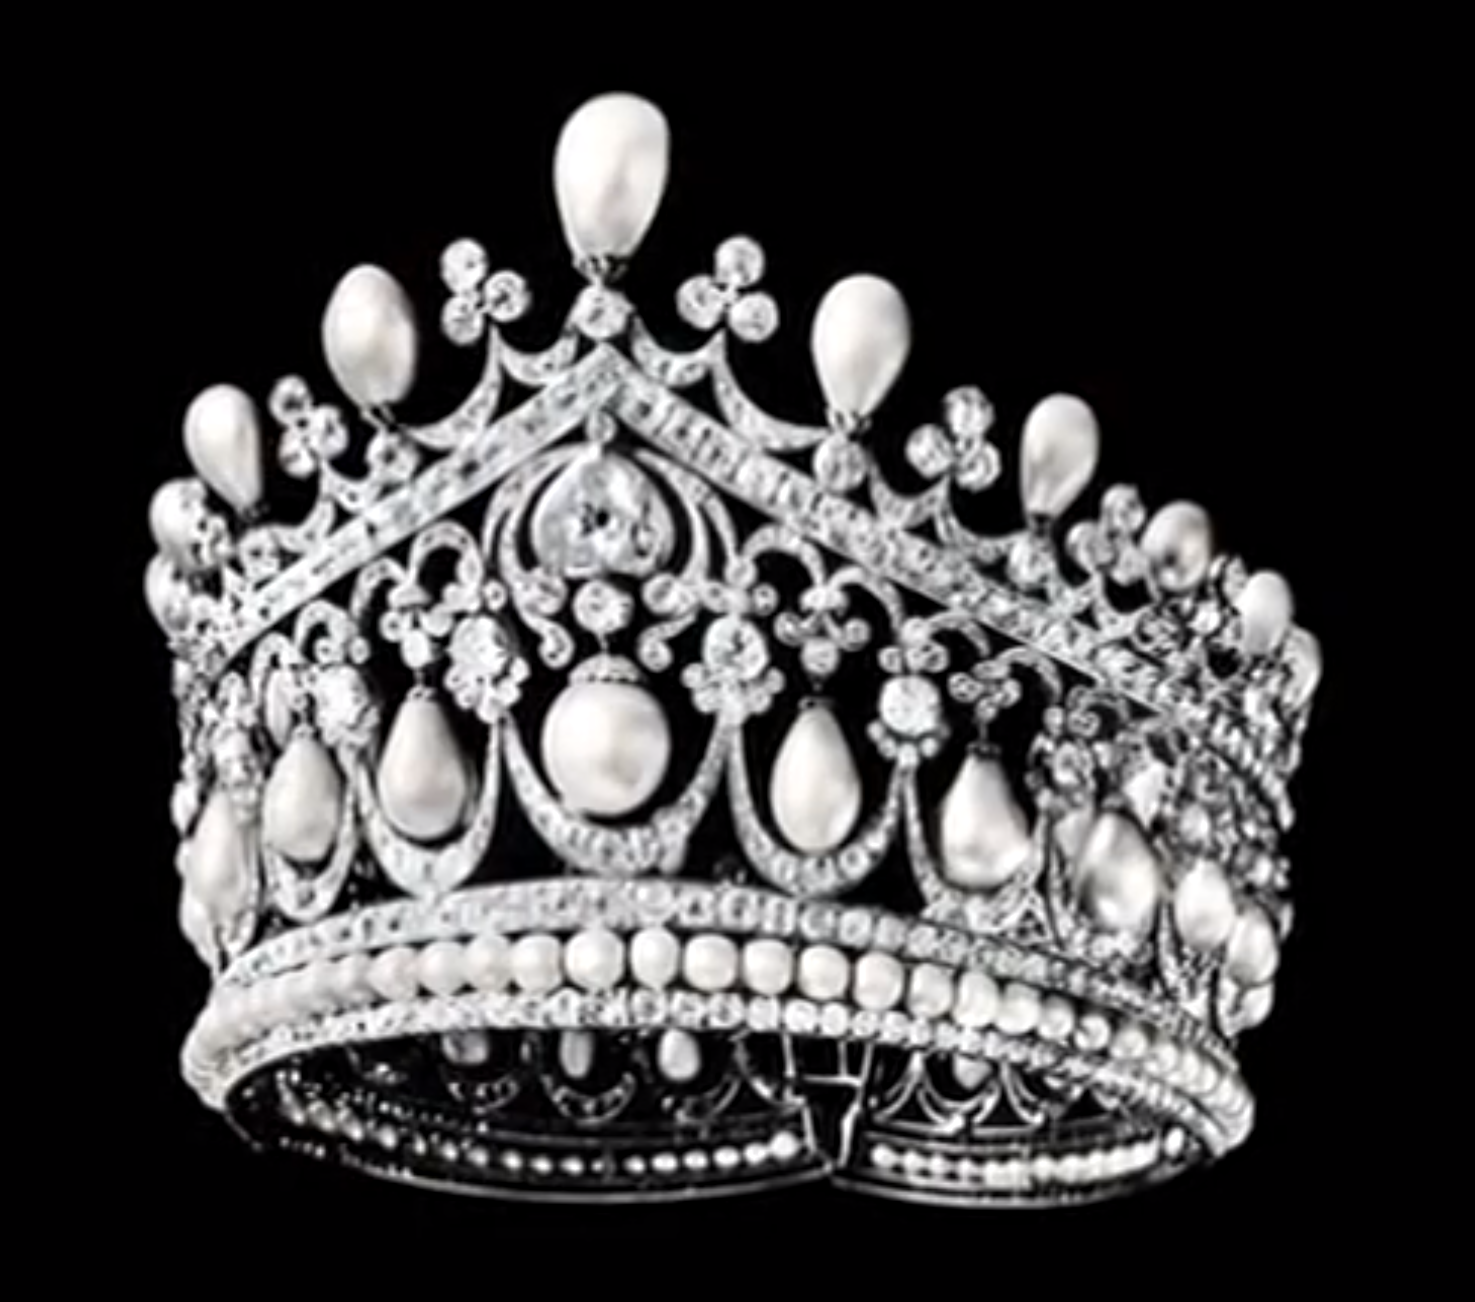 تشكيلات منوعة من التجيان Empress+alexandra+russia+bolin+tiara+pearls+diamonds